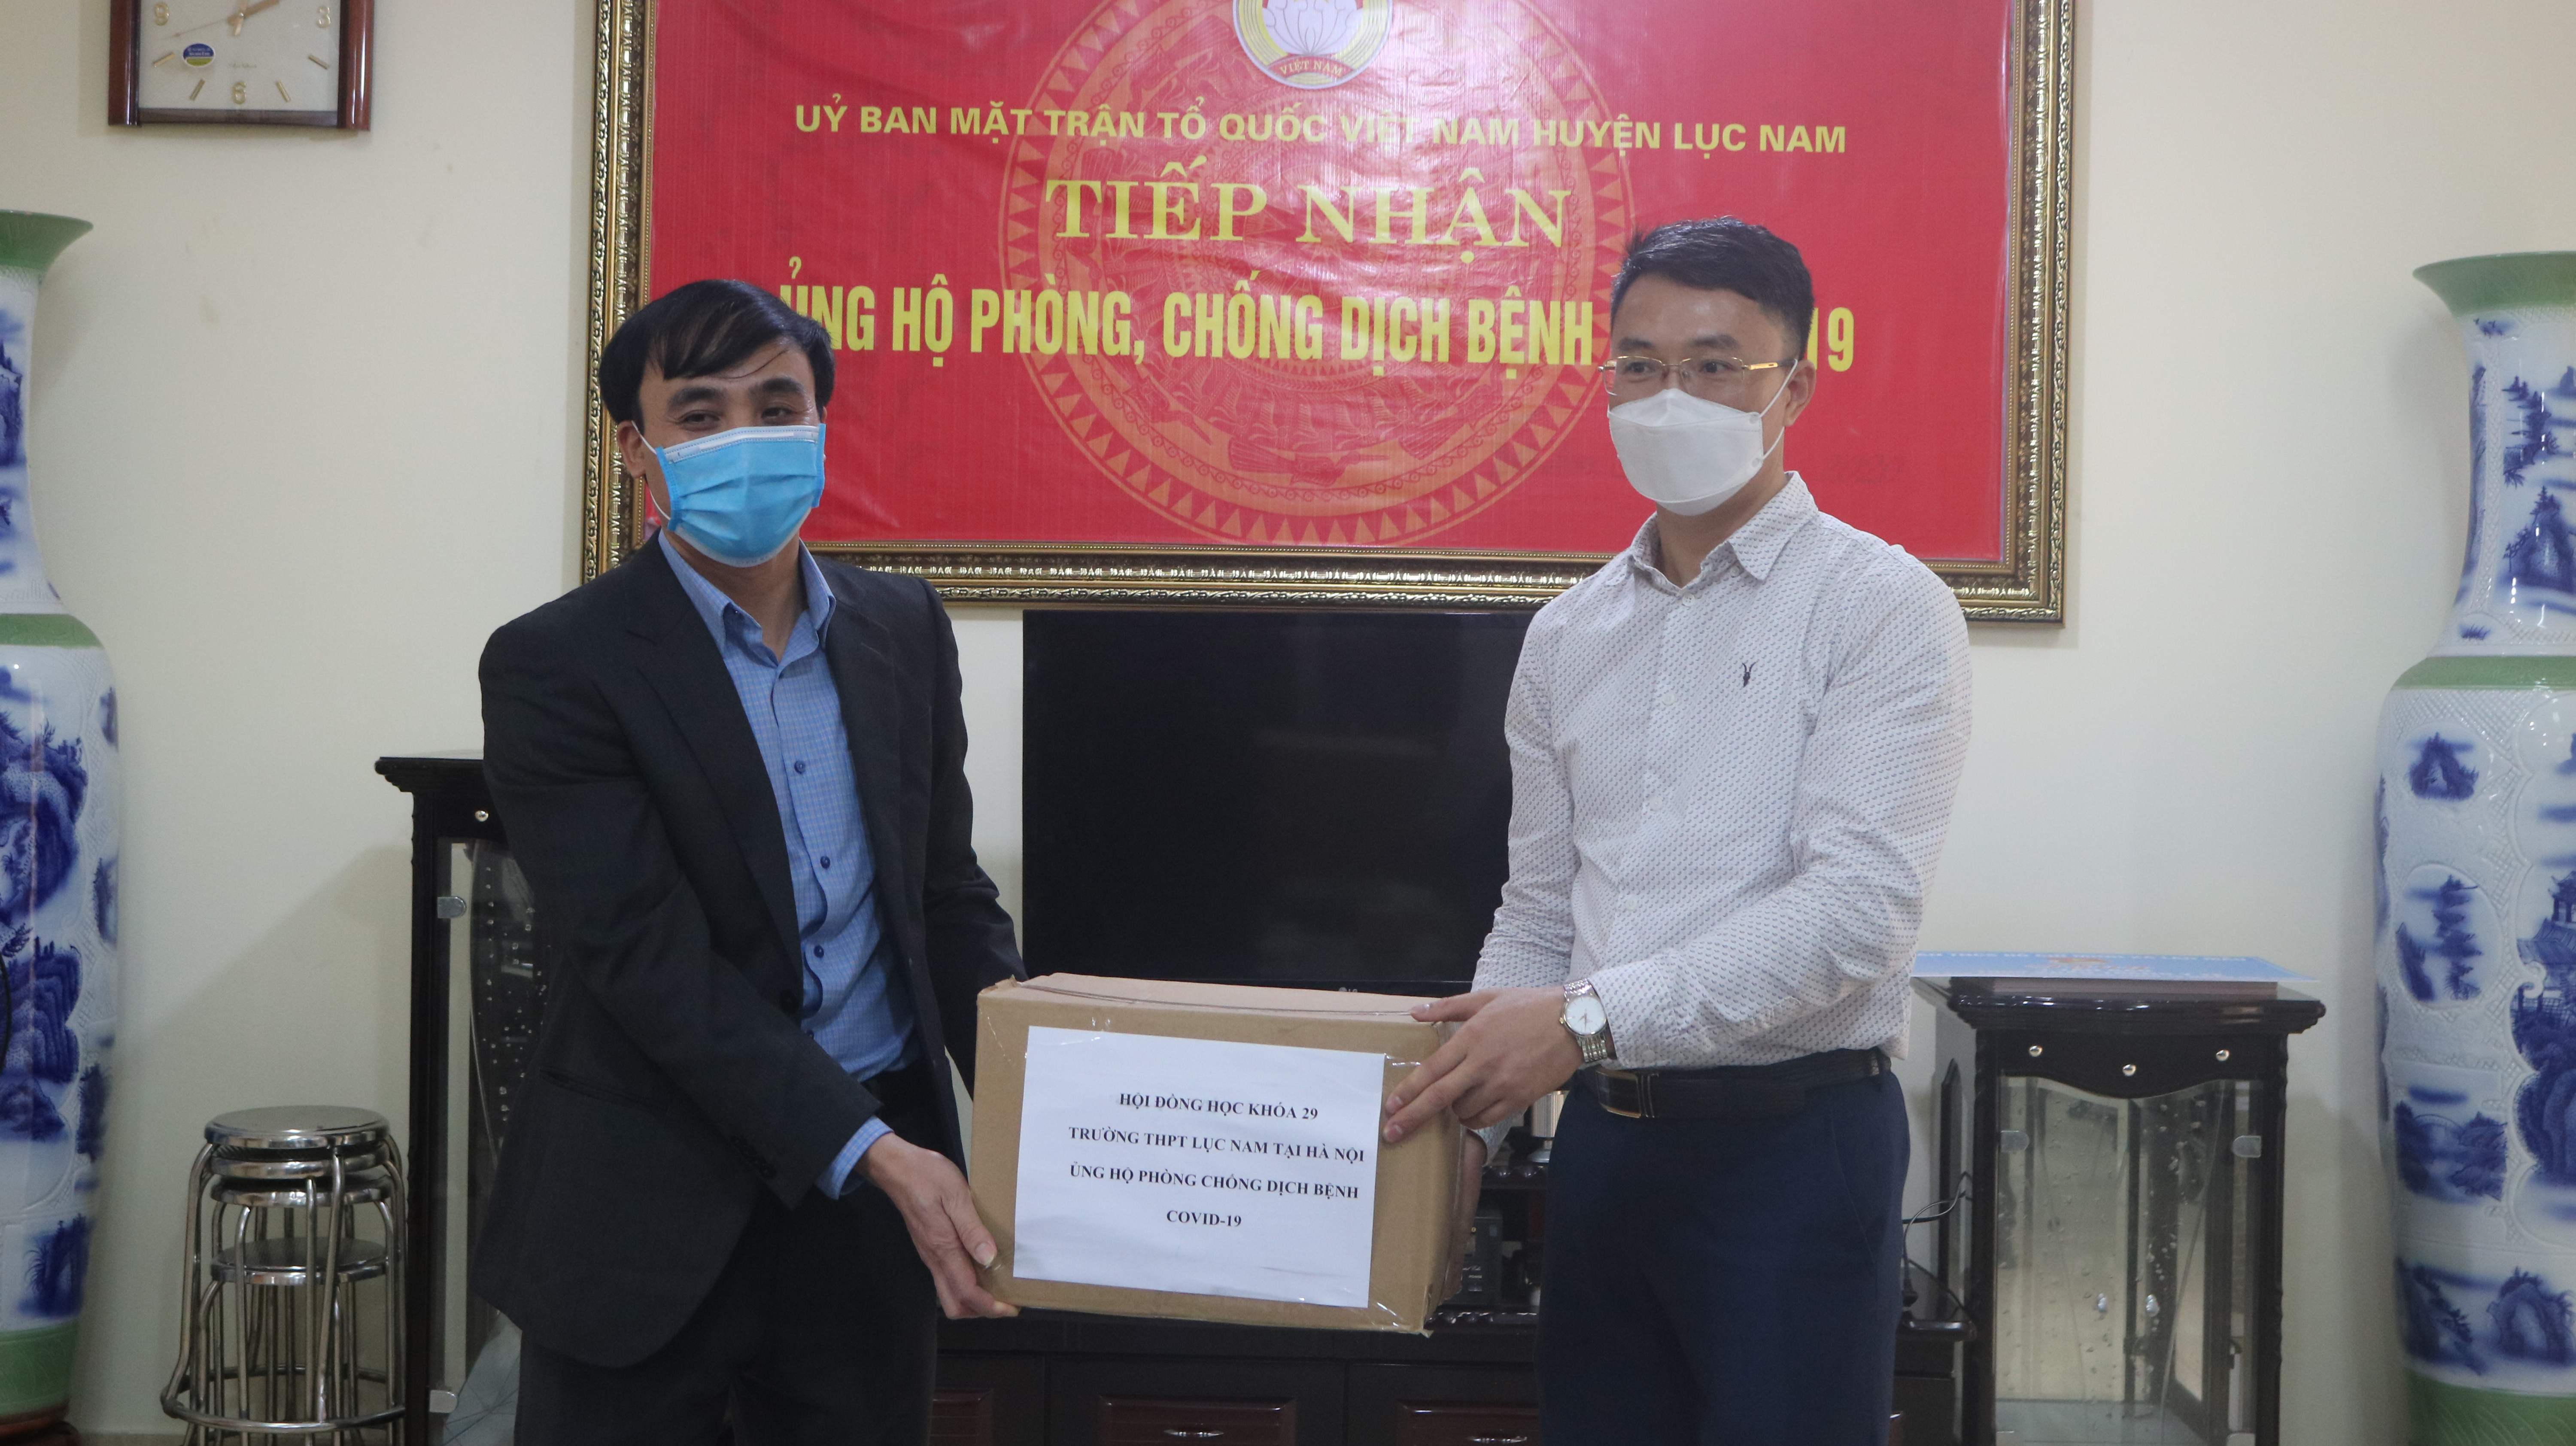 Học sinh khóa 29 trường THPT Lục nam ủng hộ phòng chống dịch Covid - 19 cho BCĐ huyện